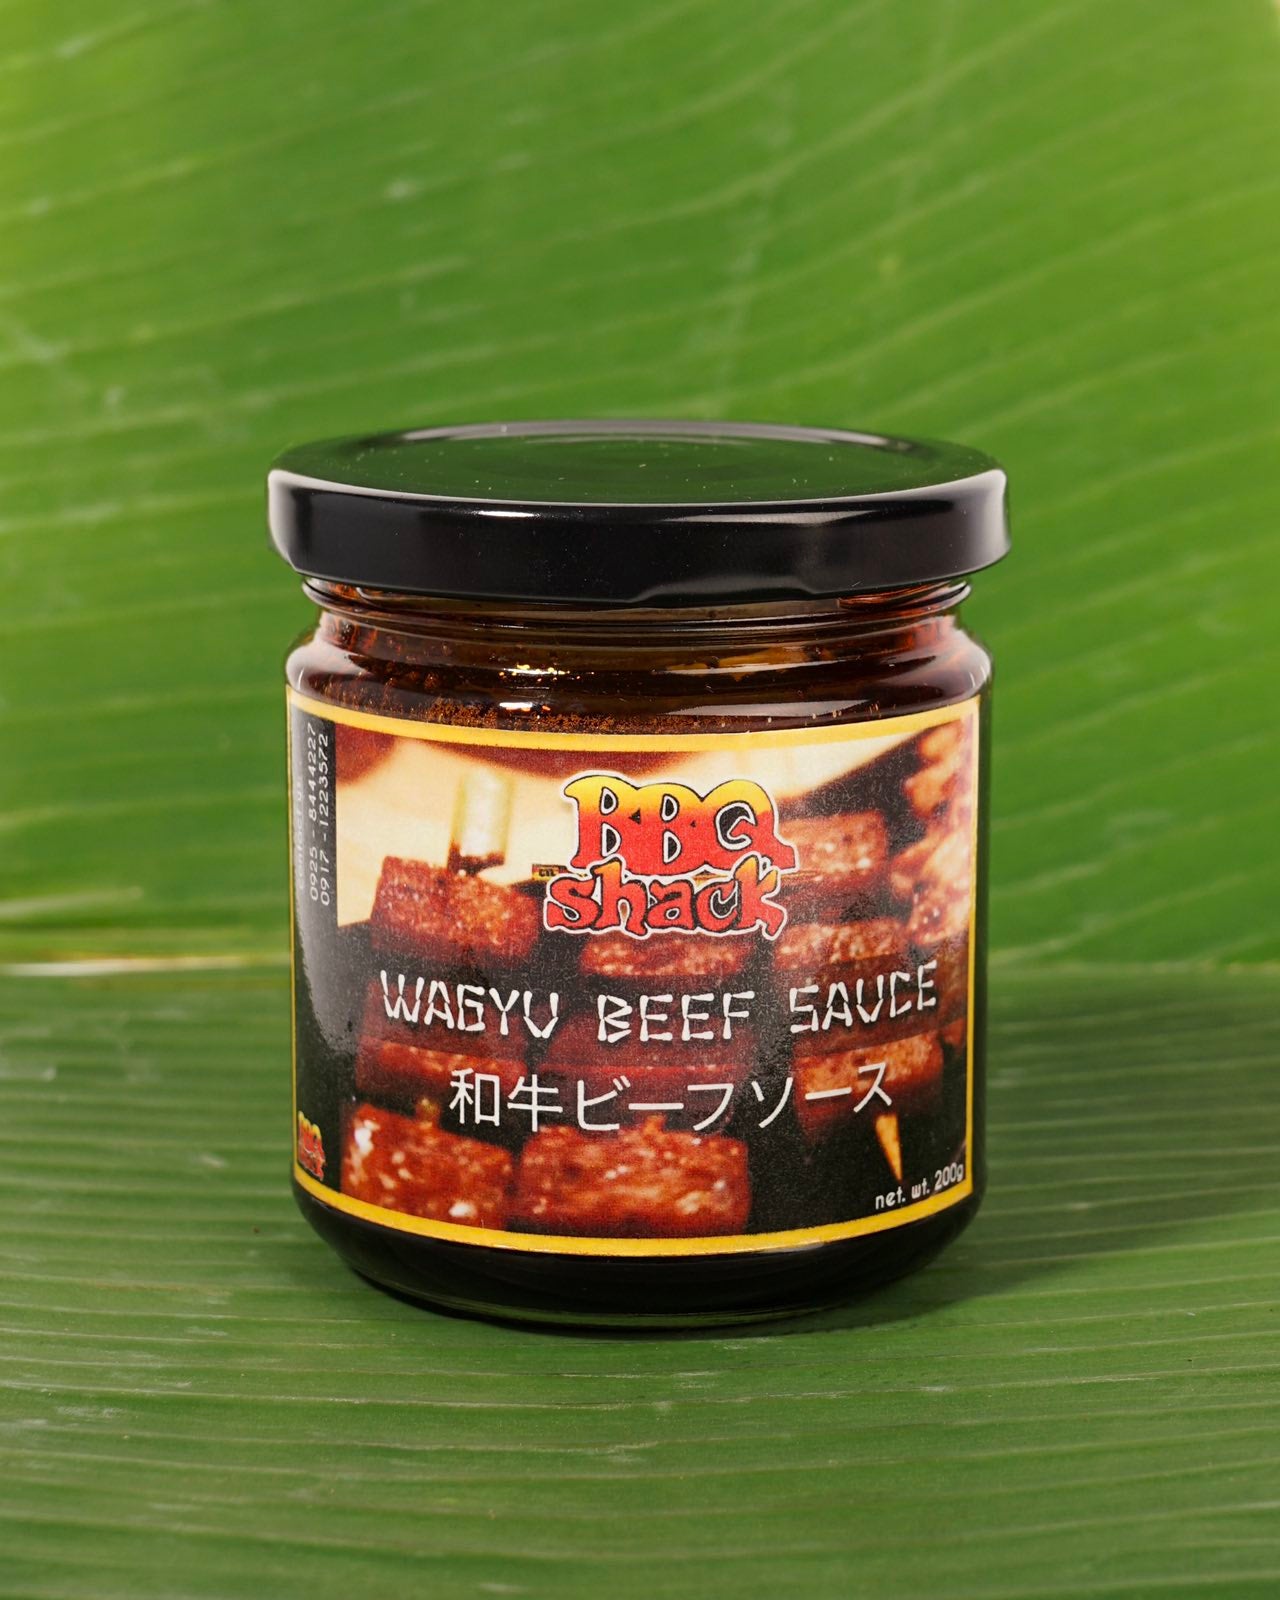 Jar of Wagyu Beef Sauce